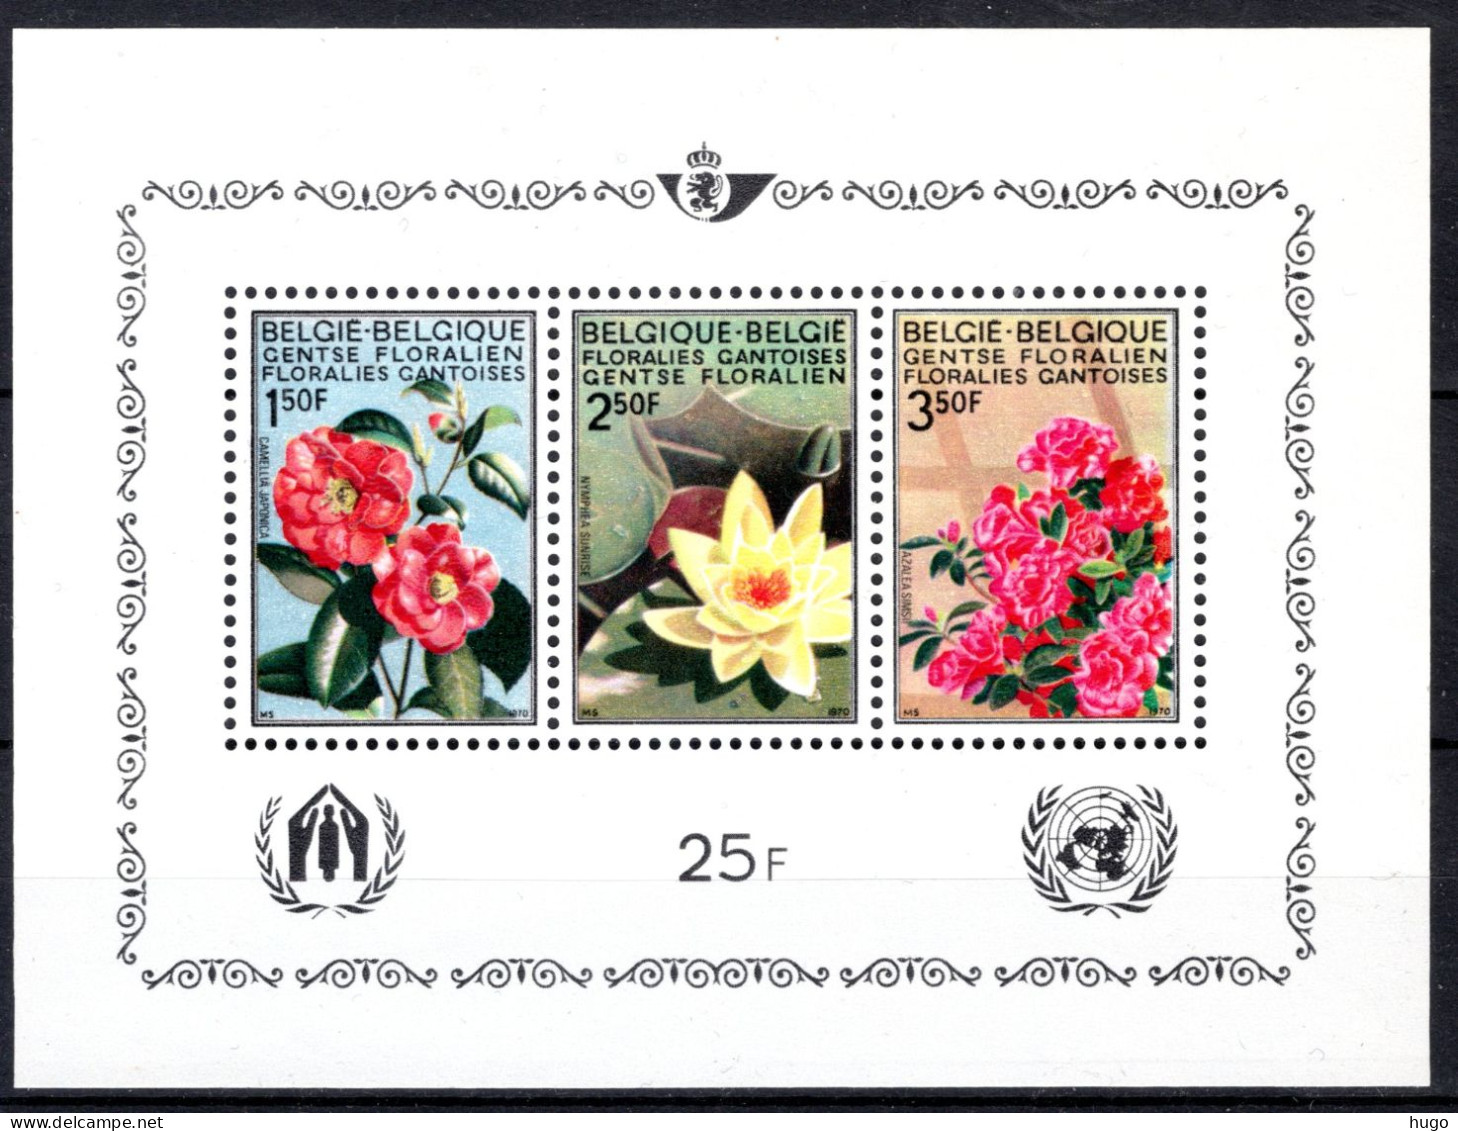 BL47 MNH 1970 - Gentse Floraliën IV - 1961-2001